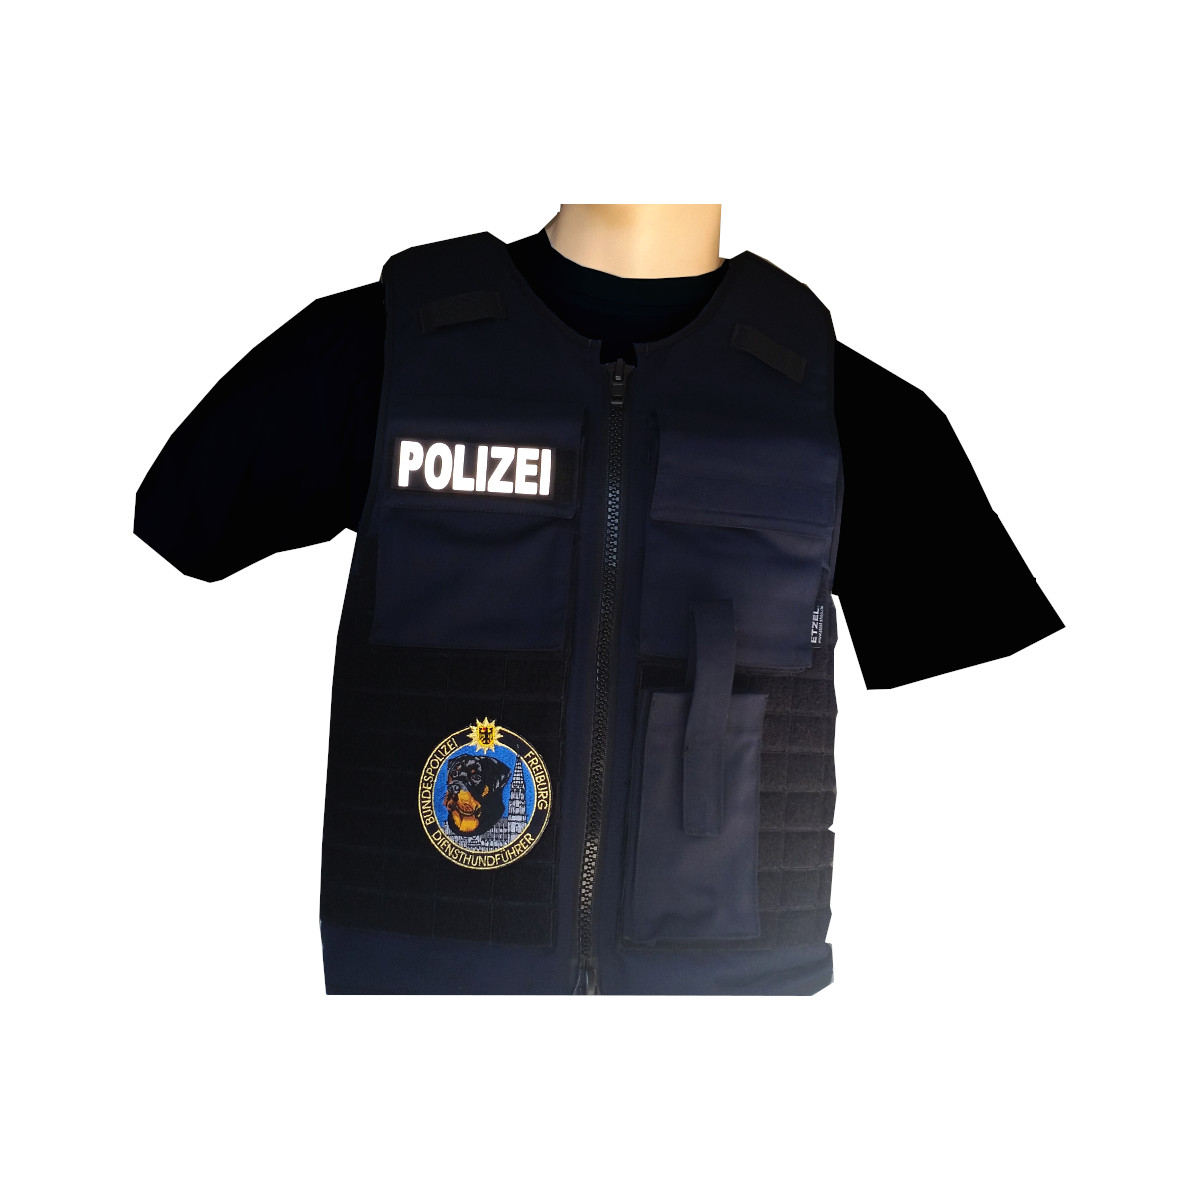 Tasche Polizei Gendarmerie Uniform, Tasche, Zubehör, Winkel